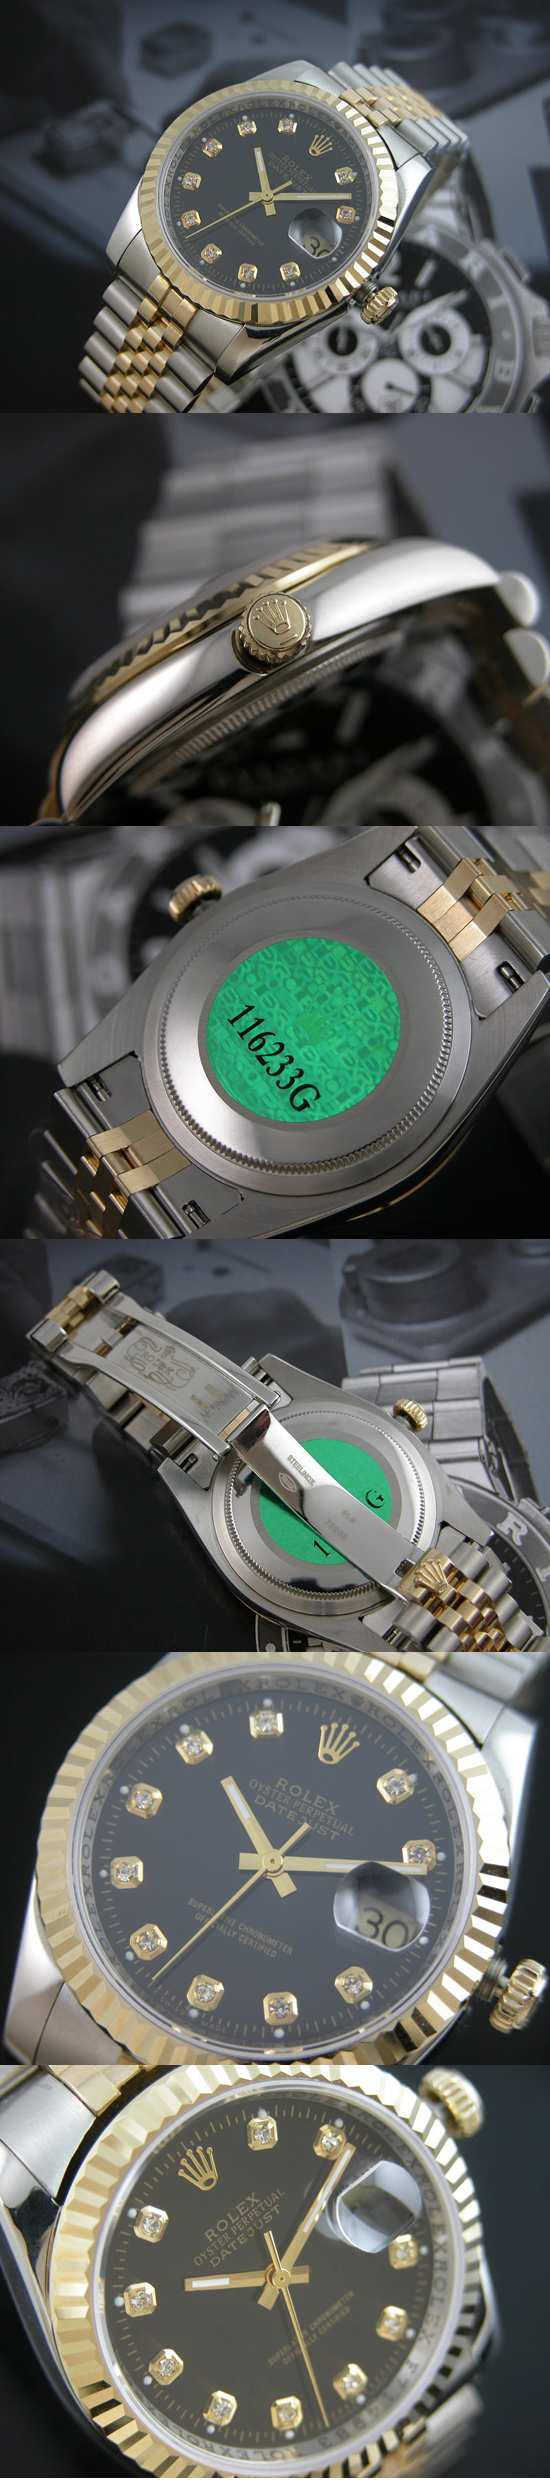 おしゃれなブランド時計がロレックス-デイトジャスト-ROLEX-116233G-137-男性用を提供します.